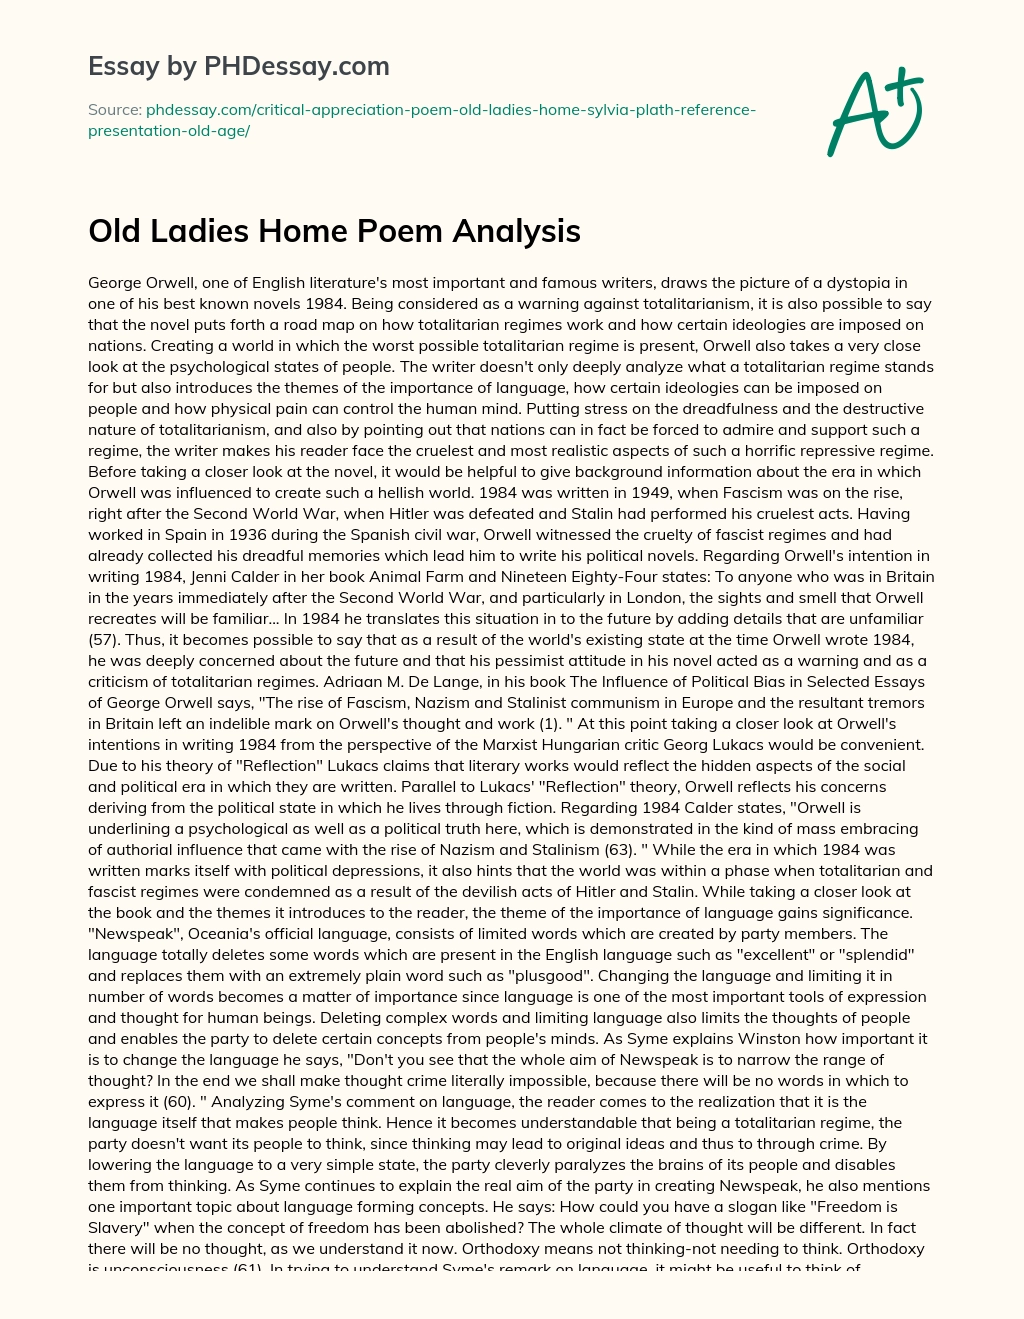 Old Ladies Home Poem Analysis essay